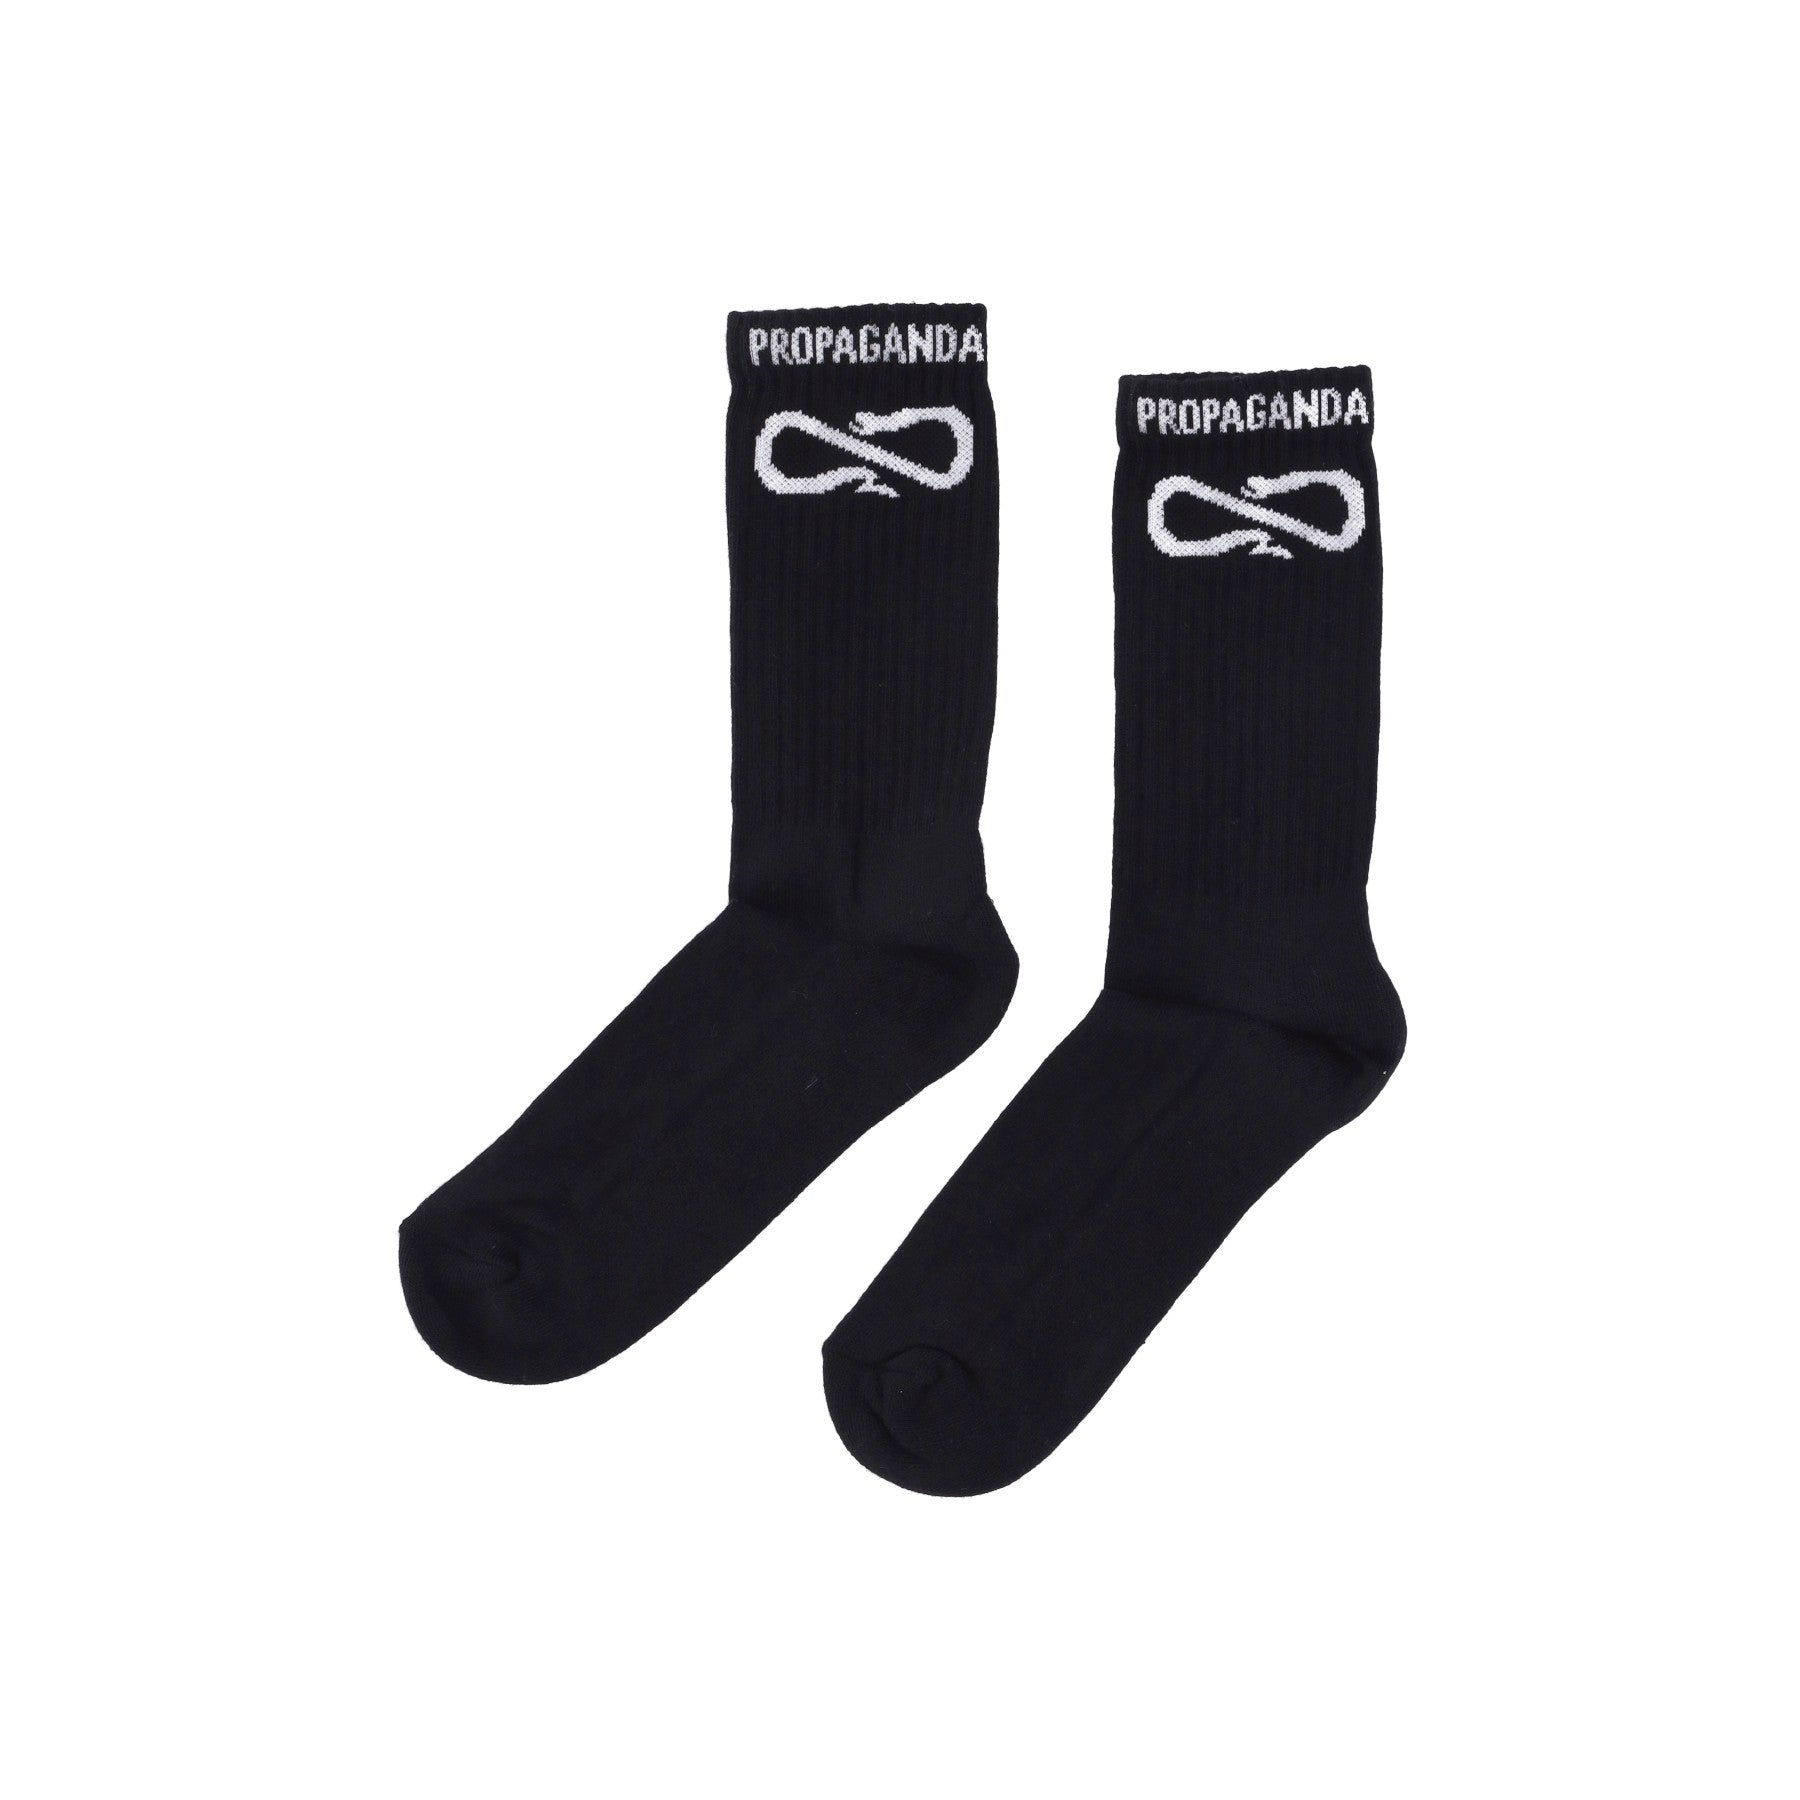 Propaganda, Calza Media Uomo Logo Socks, Black/white